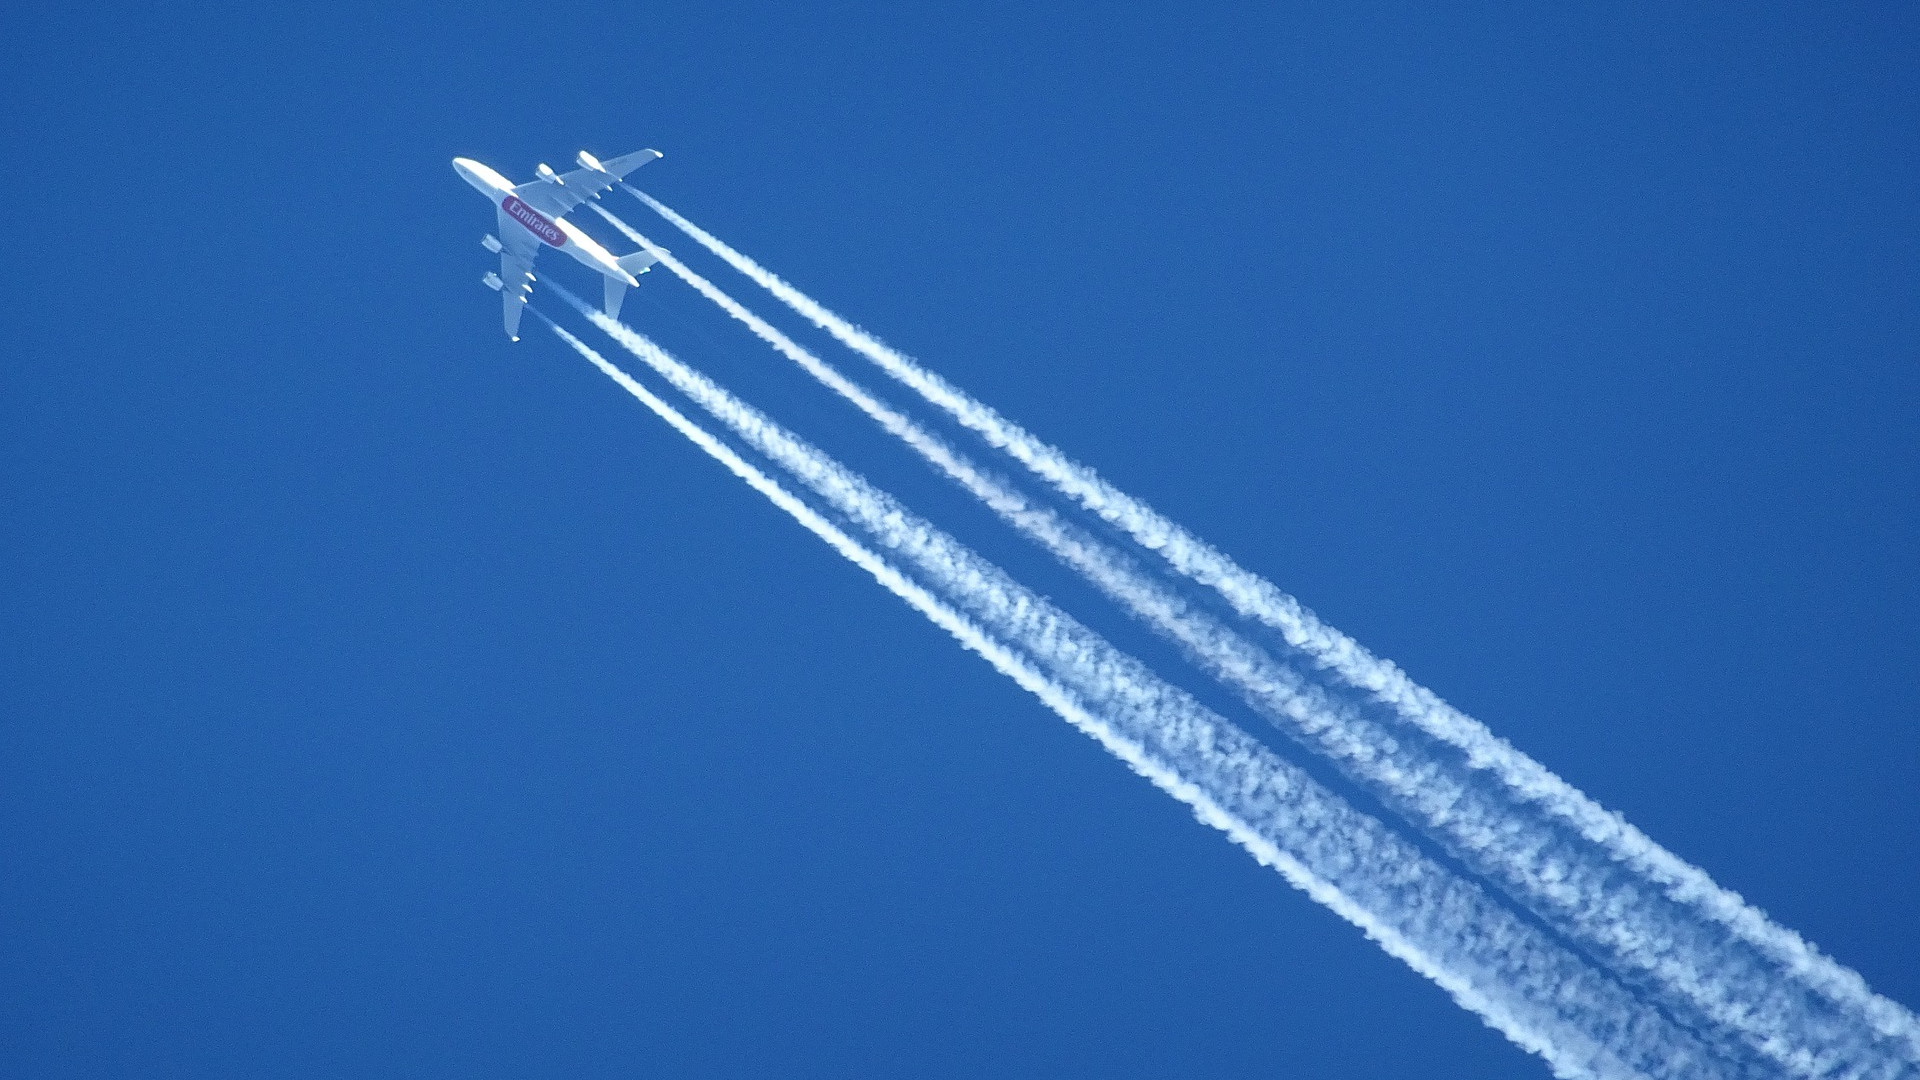 Flugzeug hinterlässt Kondensstreifen am Himmel, keine Chemtrails